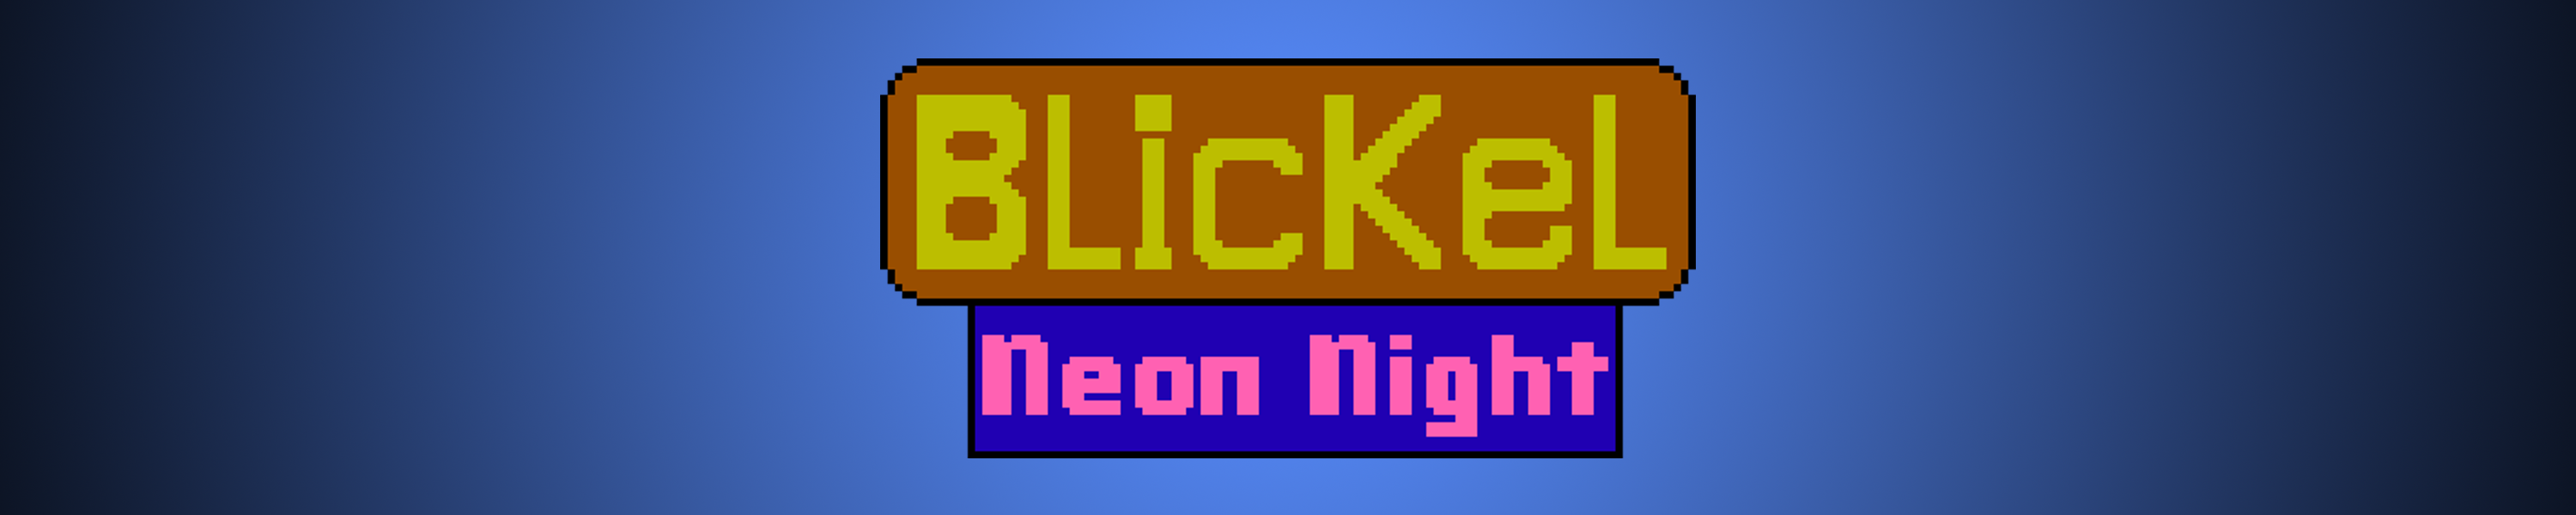 Blickel Neon Night